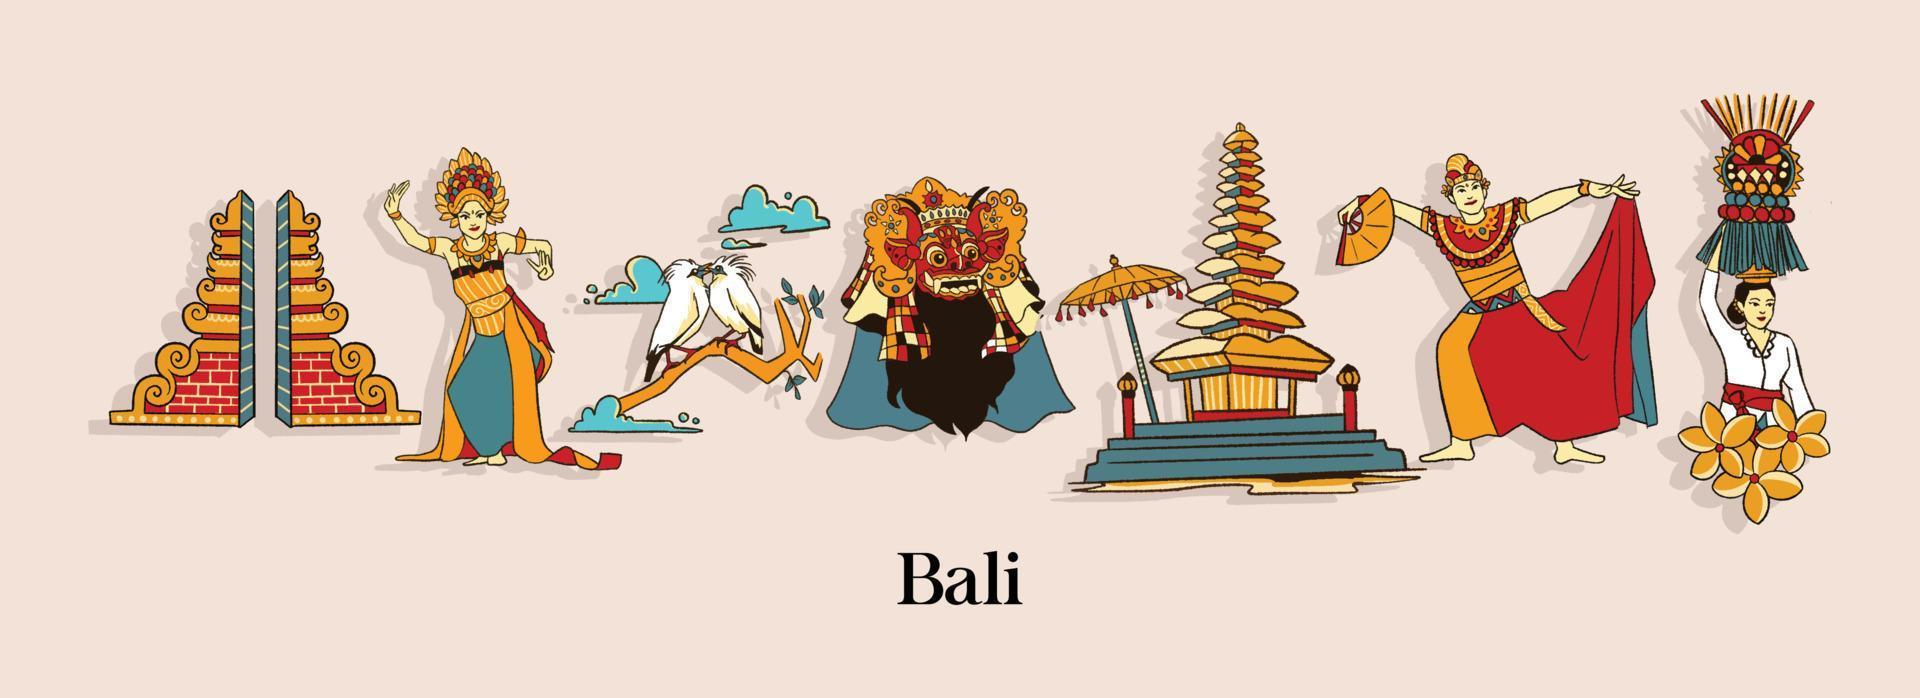 ilustración balinesa aislada. culturas indonesias dibujadas a mano vector